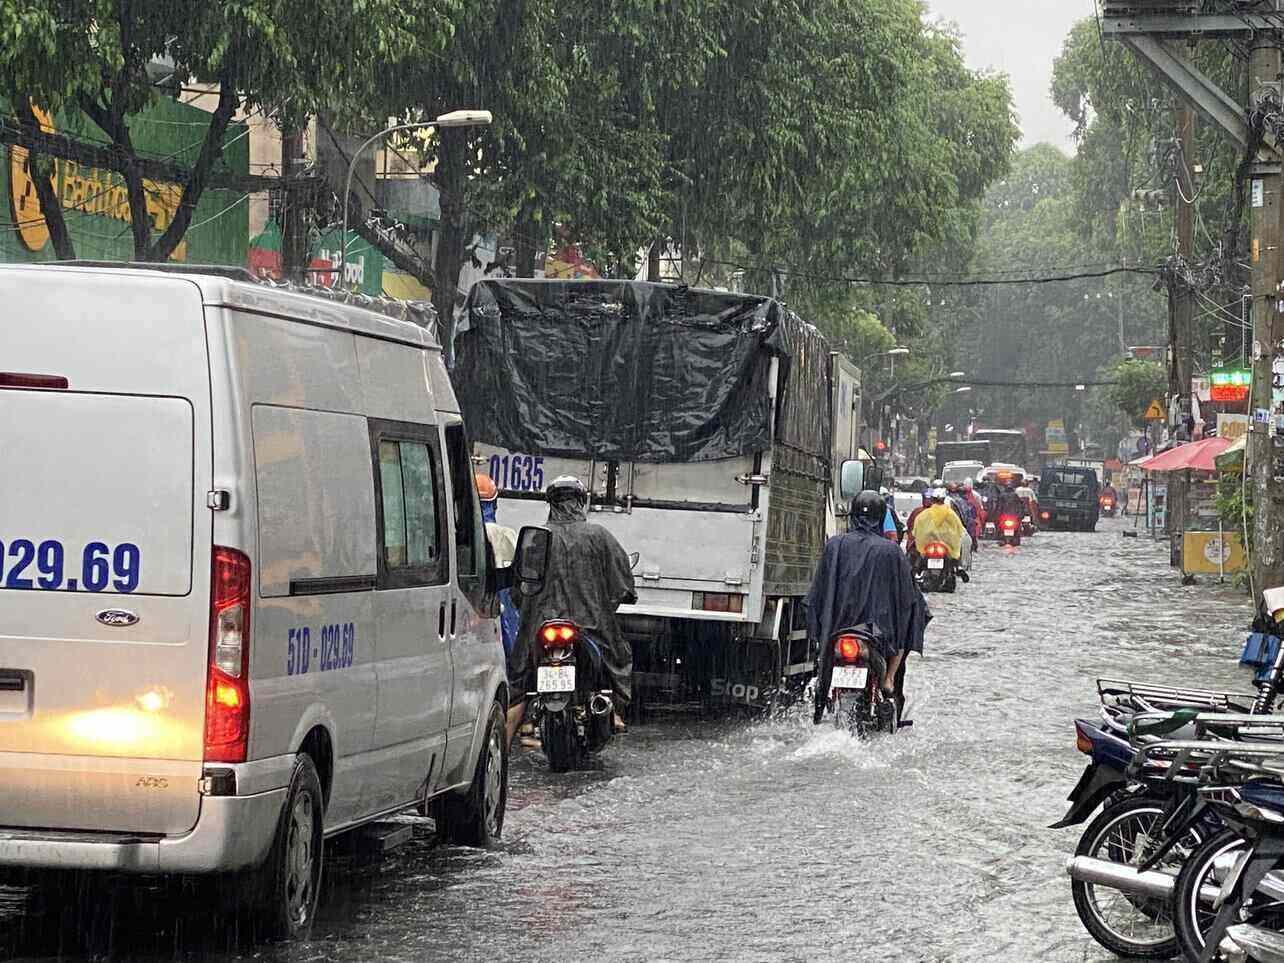 Việc mưa lớn kéo dài trong nhiều giờ khiến cho tình hình giao thông trở nên rối loạn.